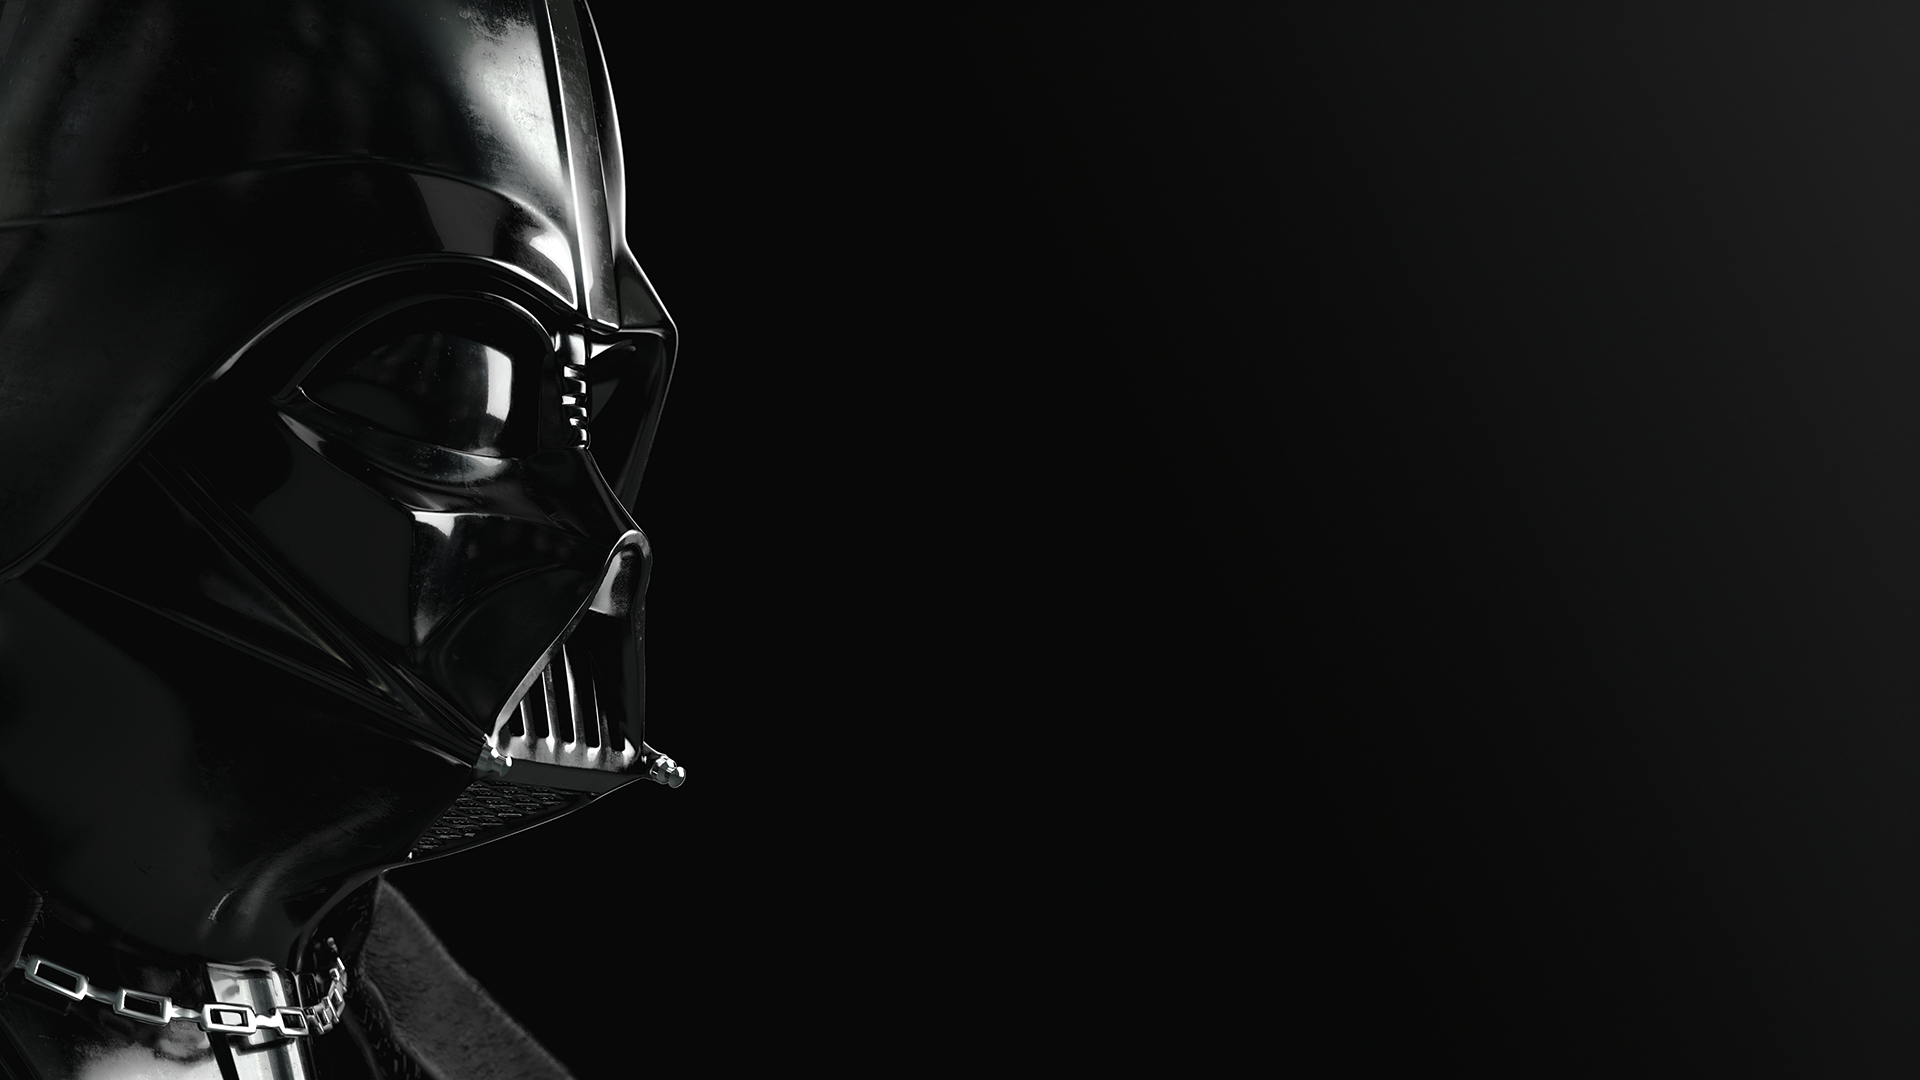 Free download Darth Vader Wallpaper Top HDQ Darth Vader Image [1920x1080] for your Desktop, Mobile & Tablet. Explore Darth Vader Background. Darth Maul Wallpaper, Darth Malgus Wallpaper, Vader Wallpaper